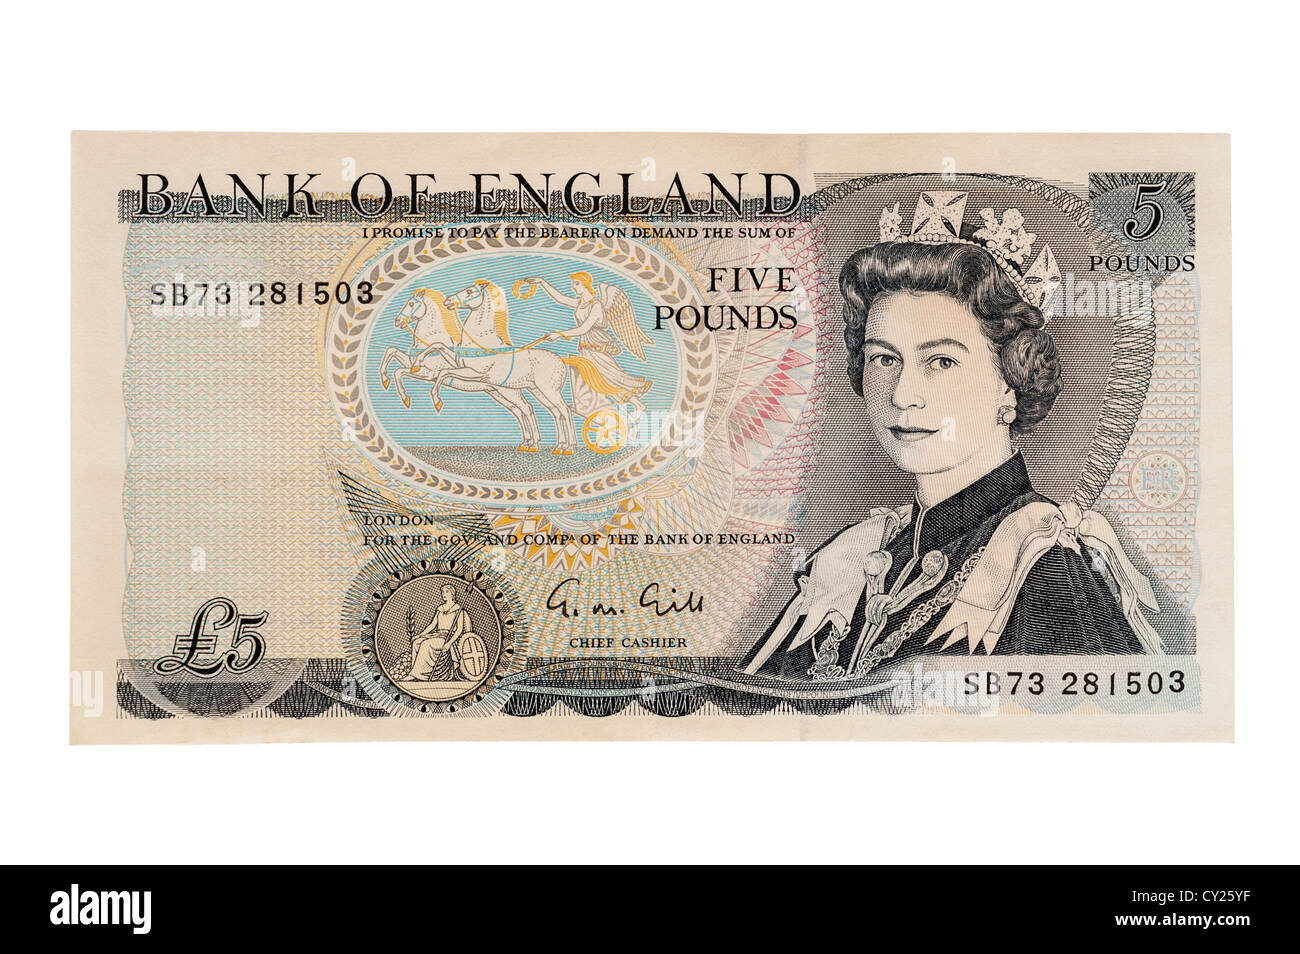 Un vecchio stile di cinque pound nota ( valuta inglese ) su sfondo bianco Foto Stock